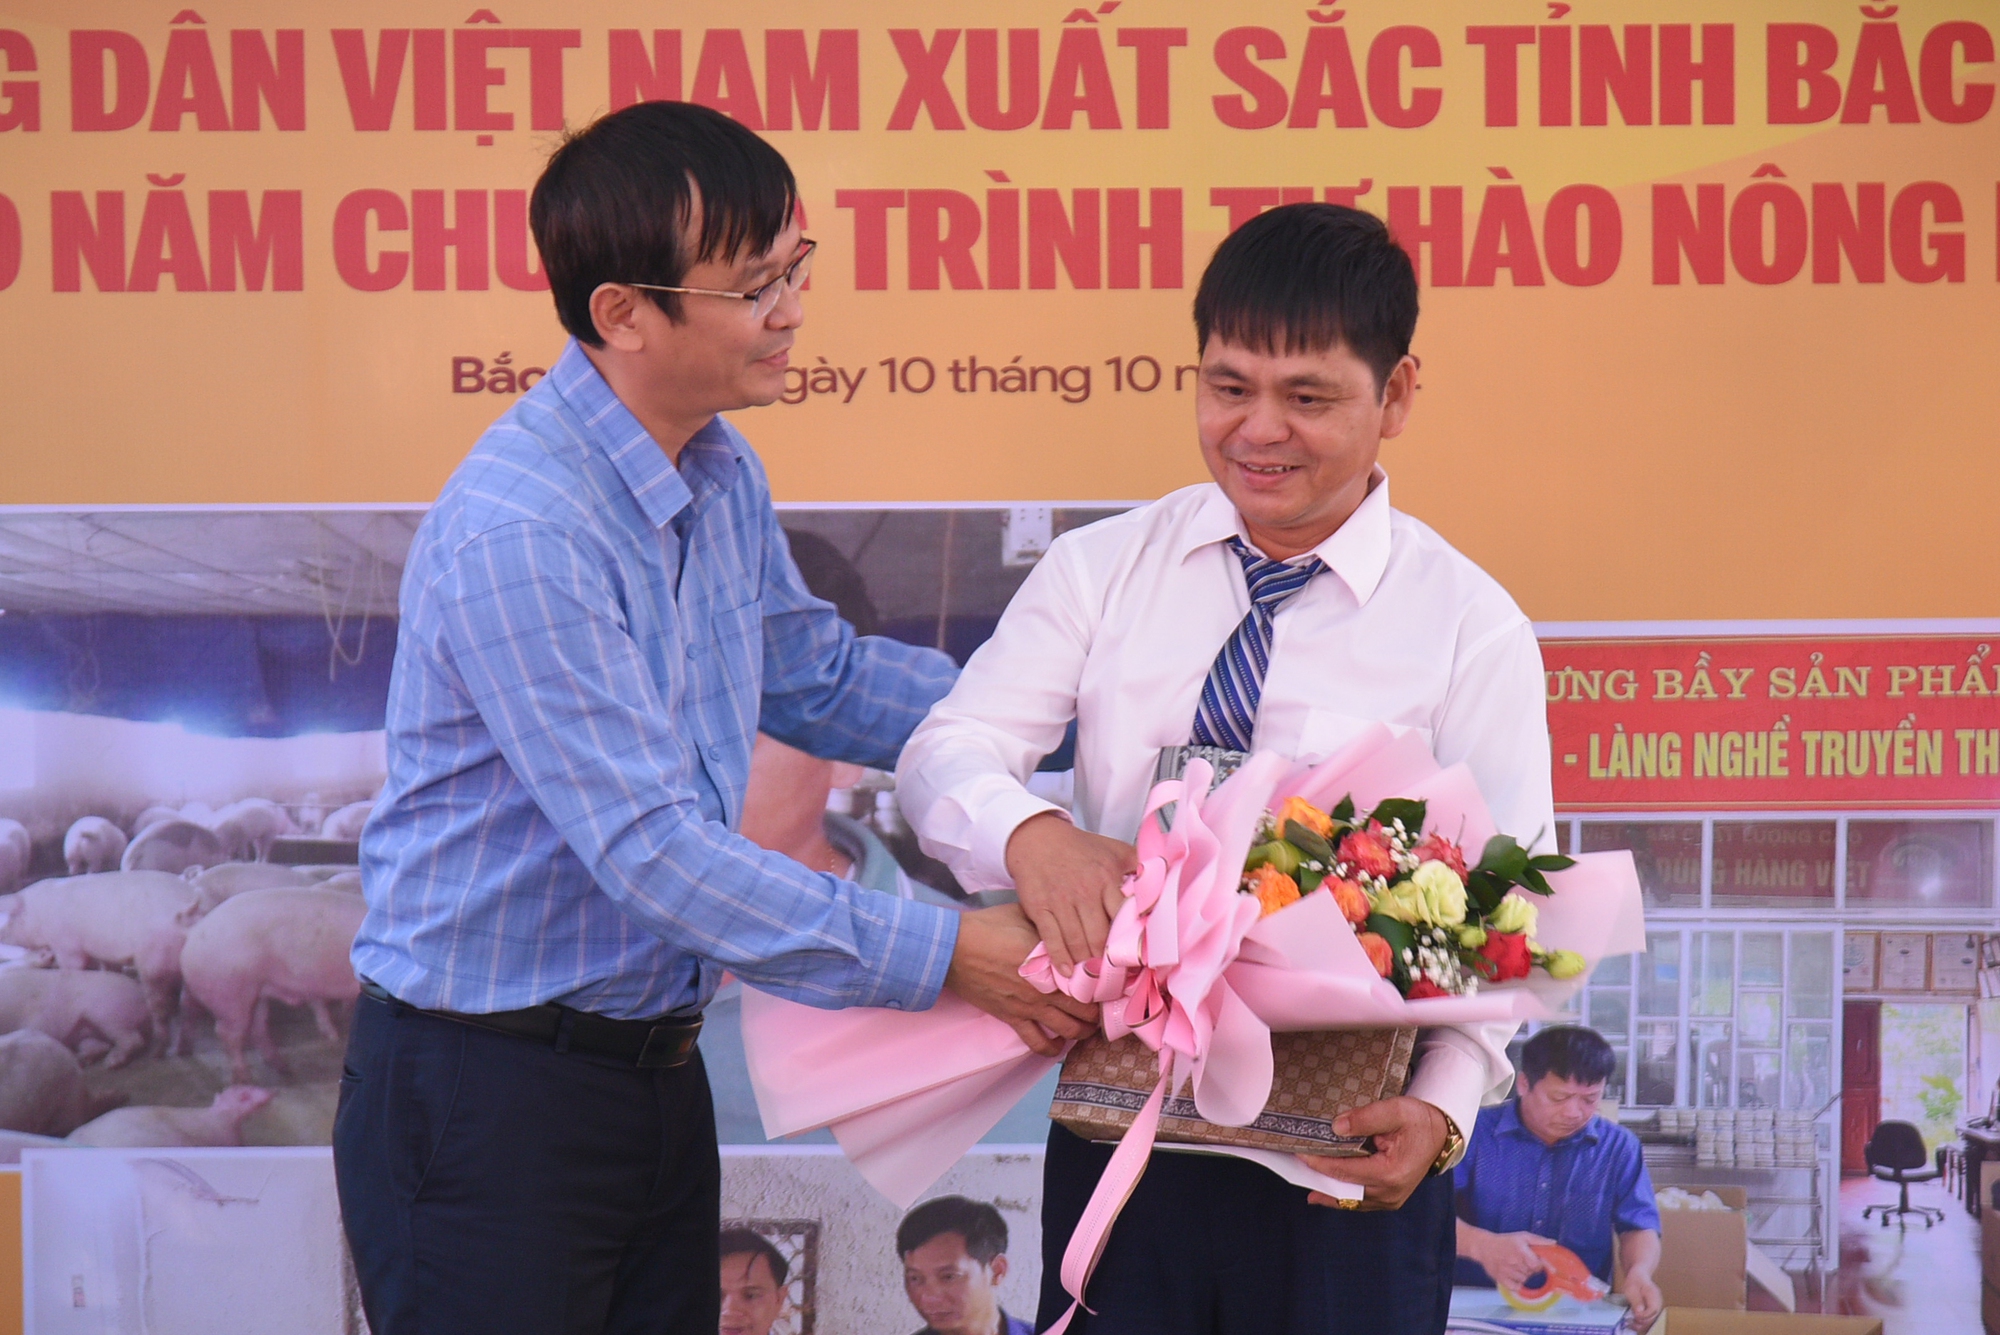 Gặp gỡ, giao lưu với các Nông dân Việt Nam xuất sắc tỉnh Bắc Giang - Ảnh 9.